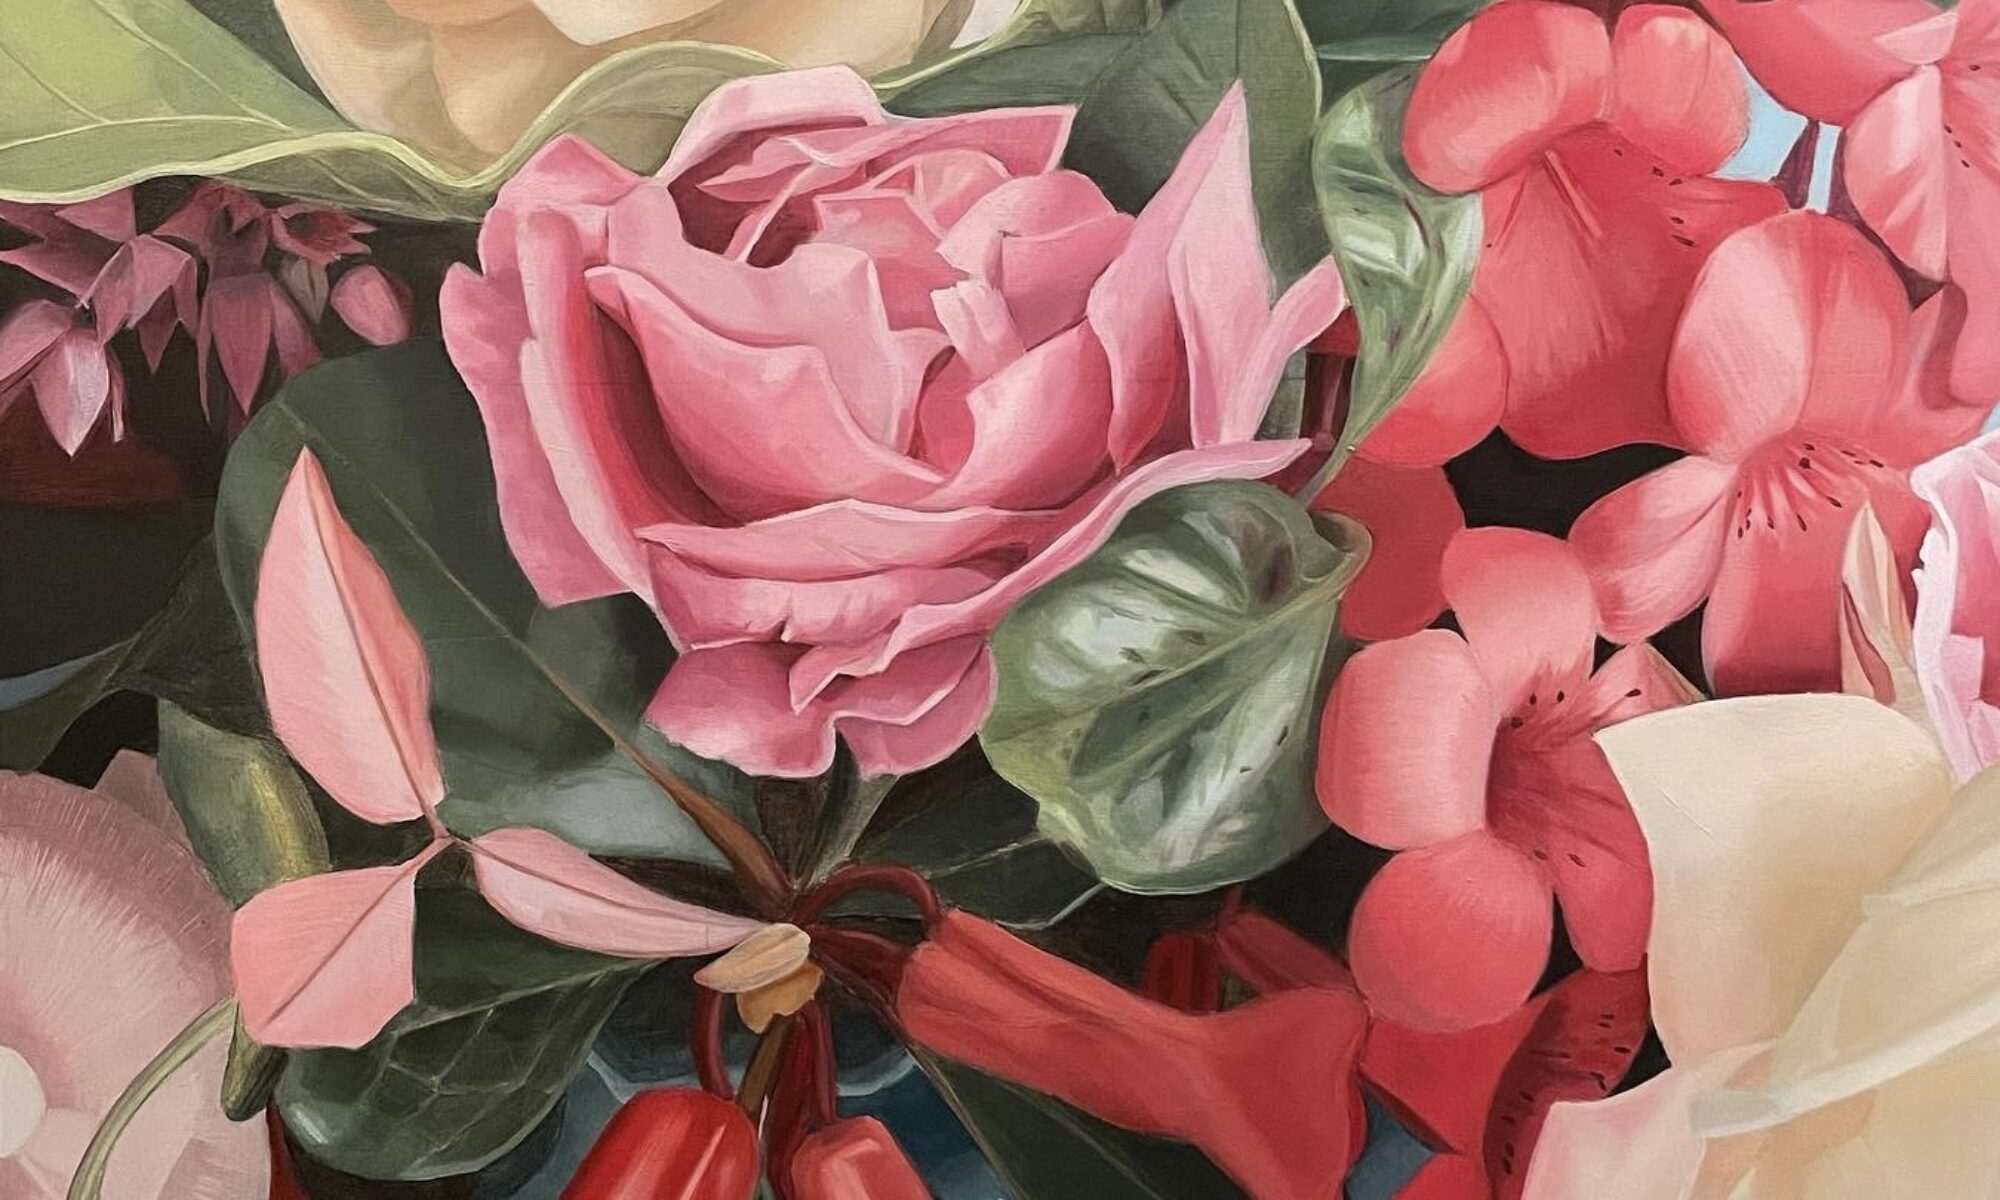 Oil Painting | Lush Flower Bouquet